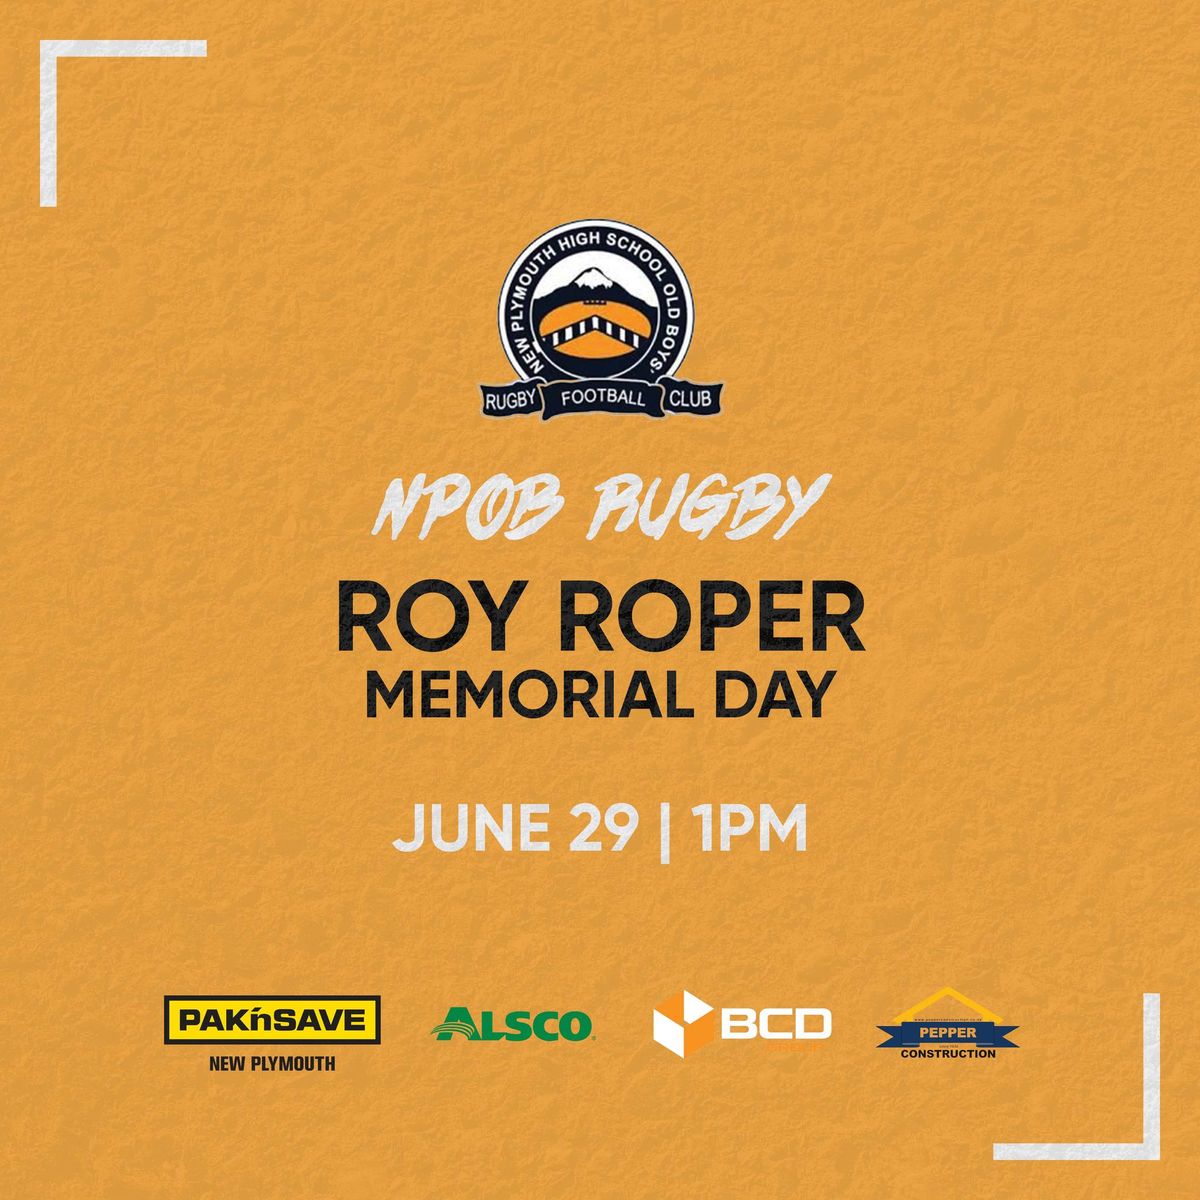 Roy Roper Memorial Day